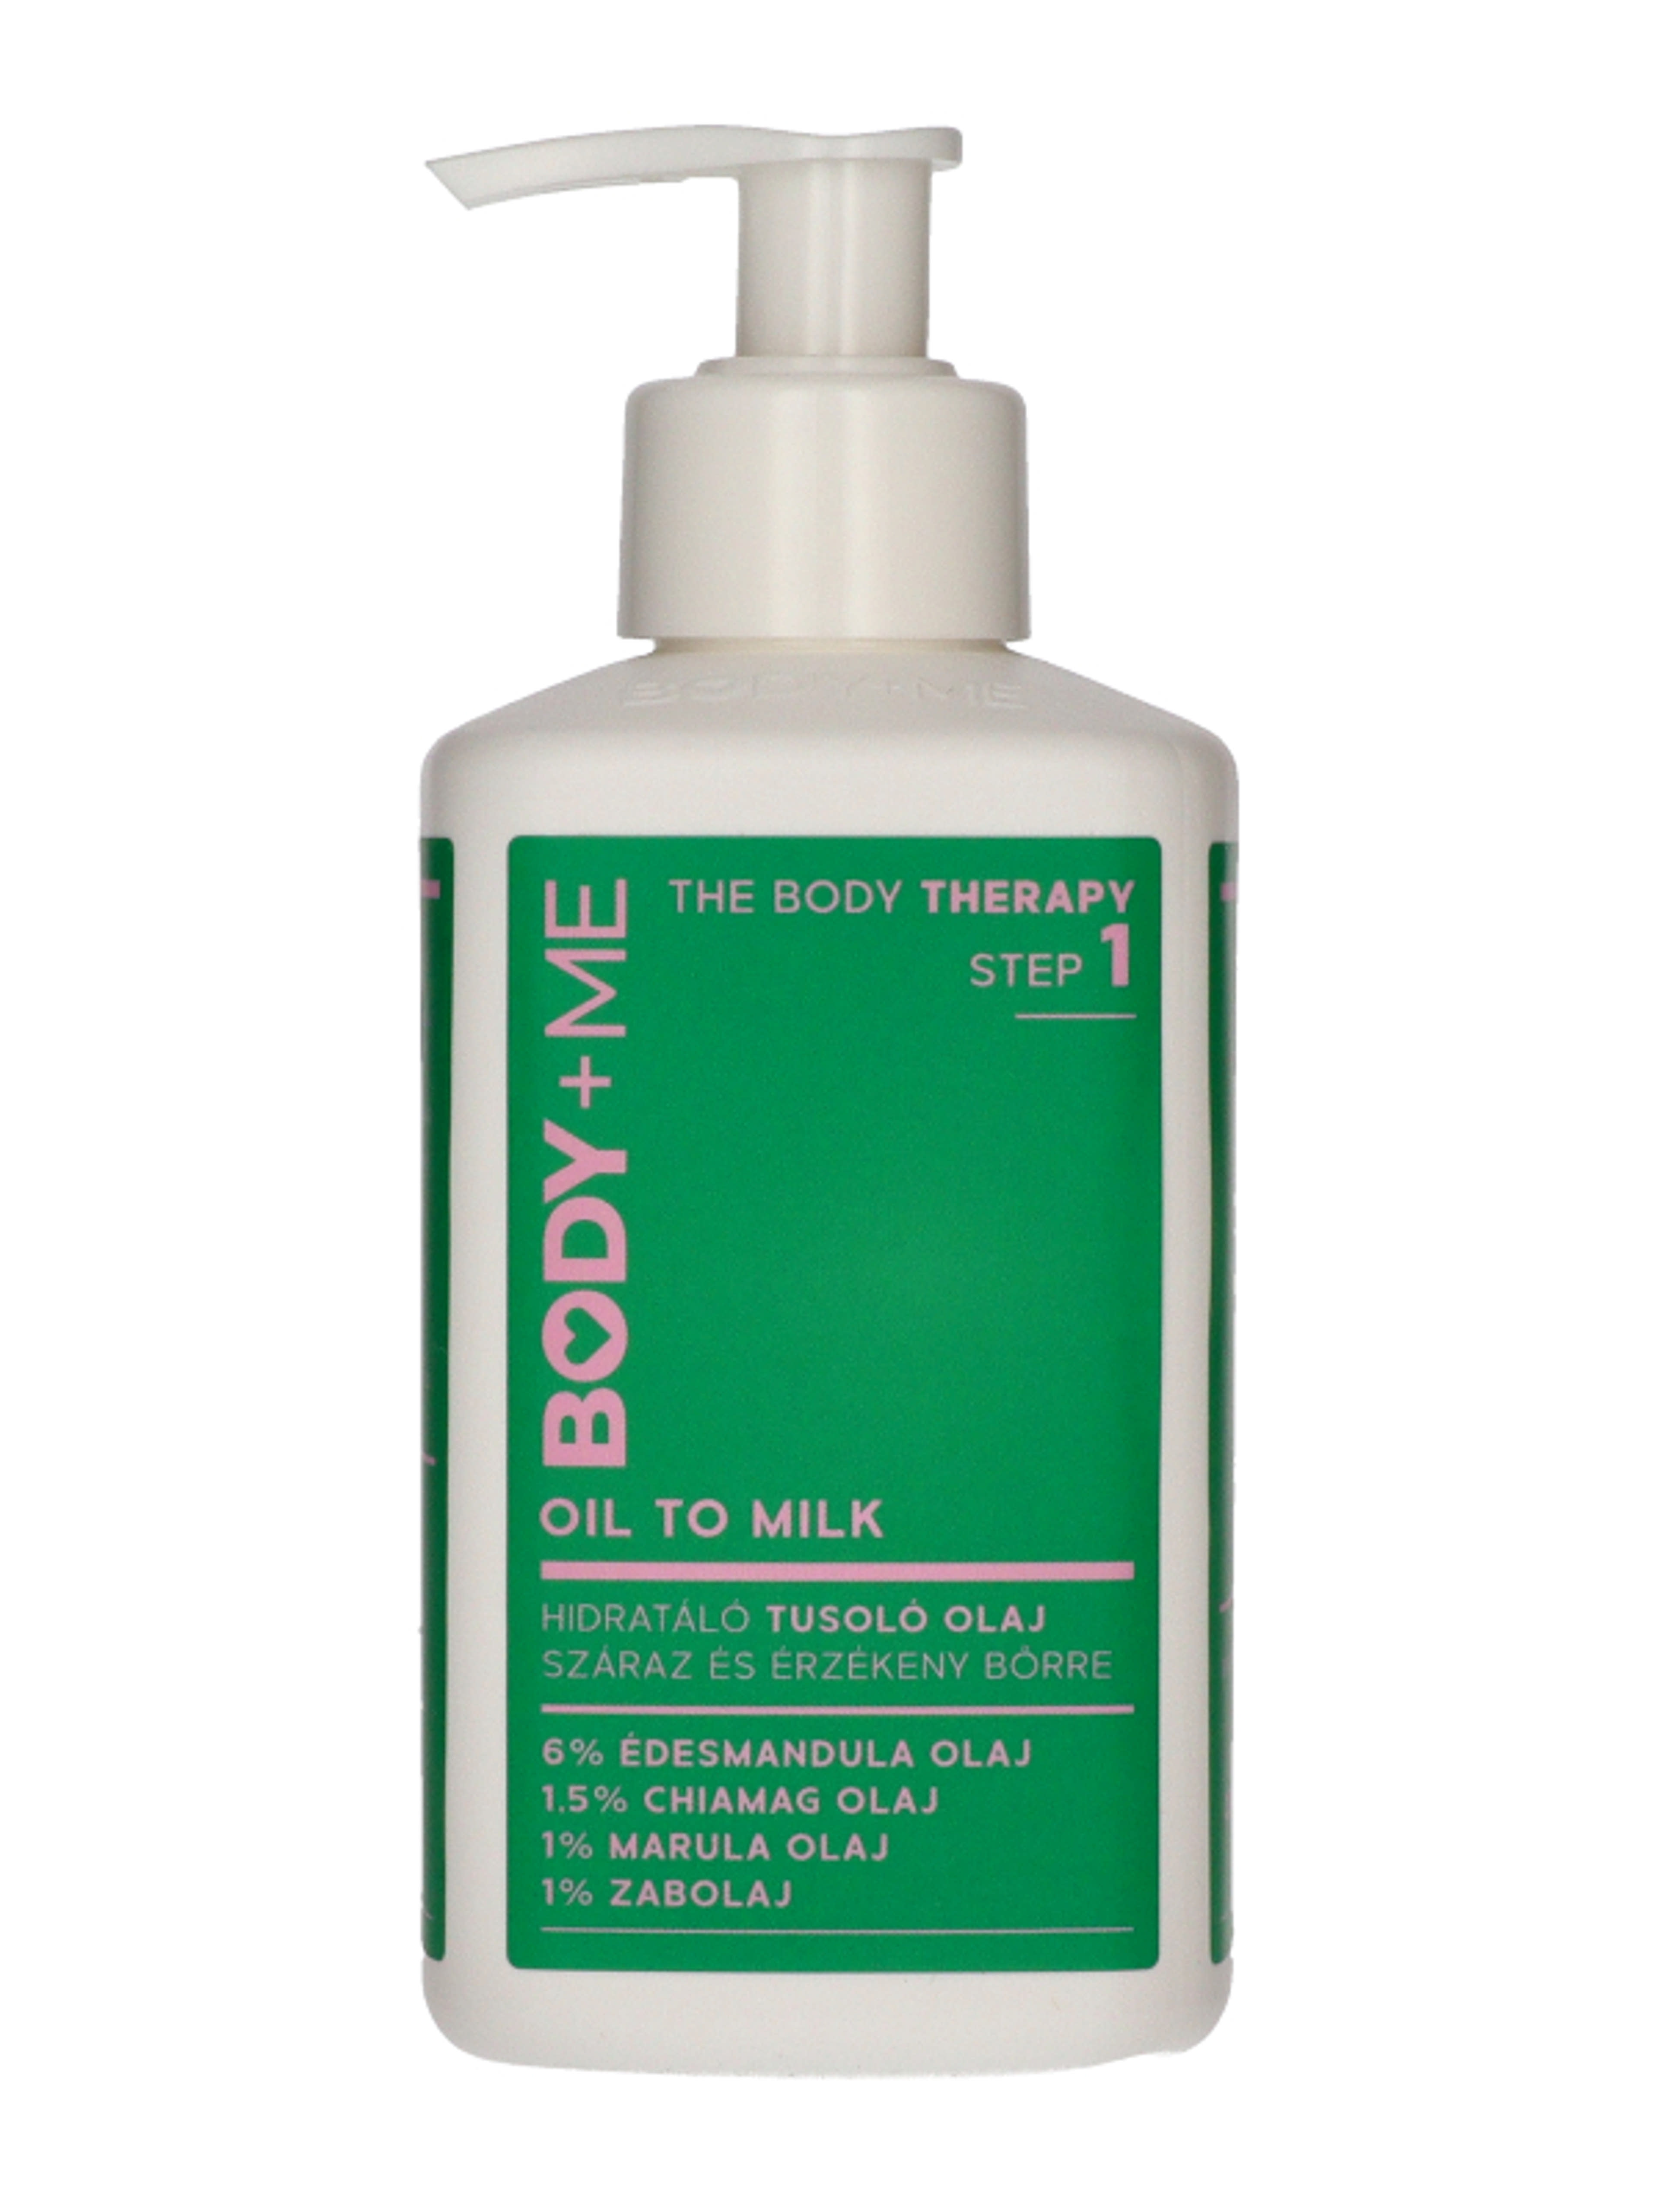 Body + Me Oil to Milk tusoló olaj - 300 ml